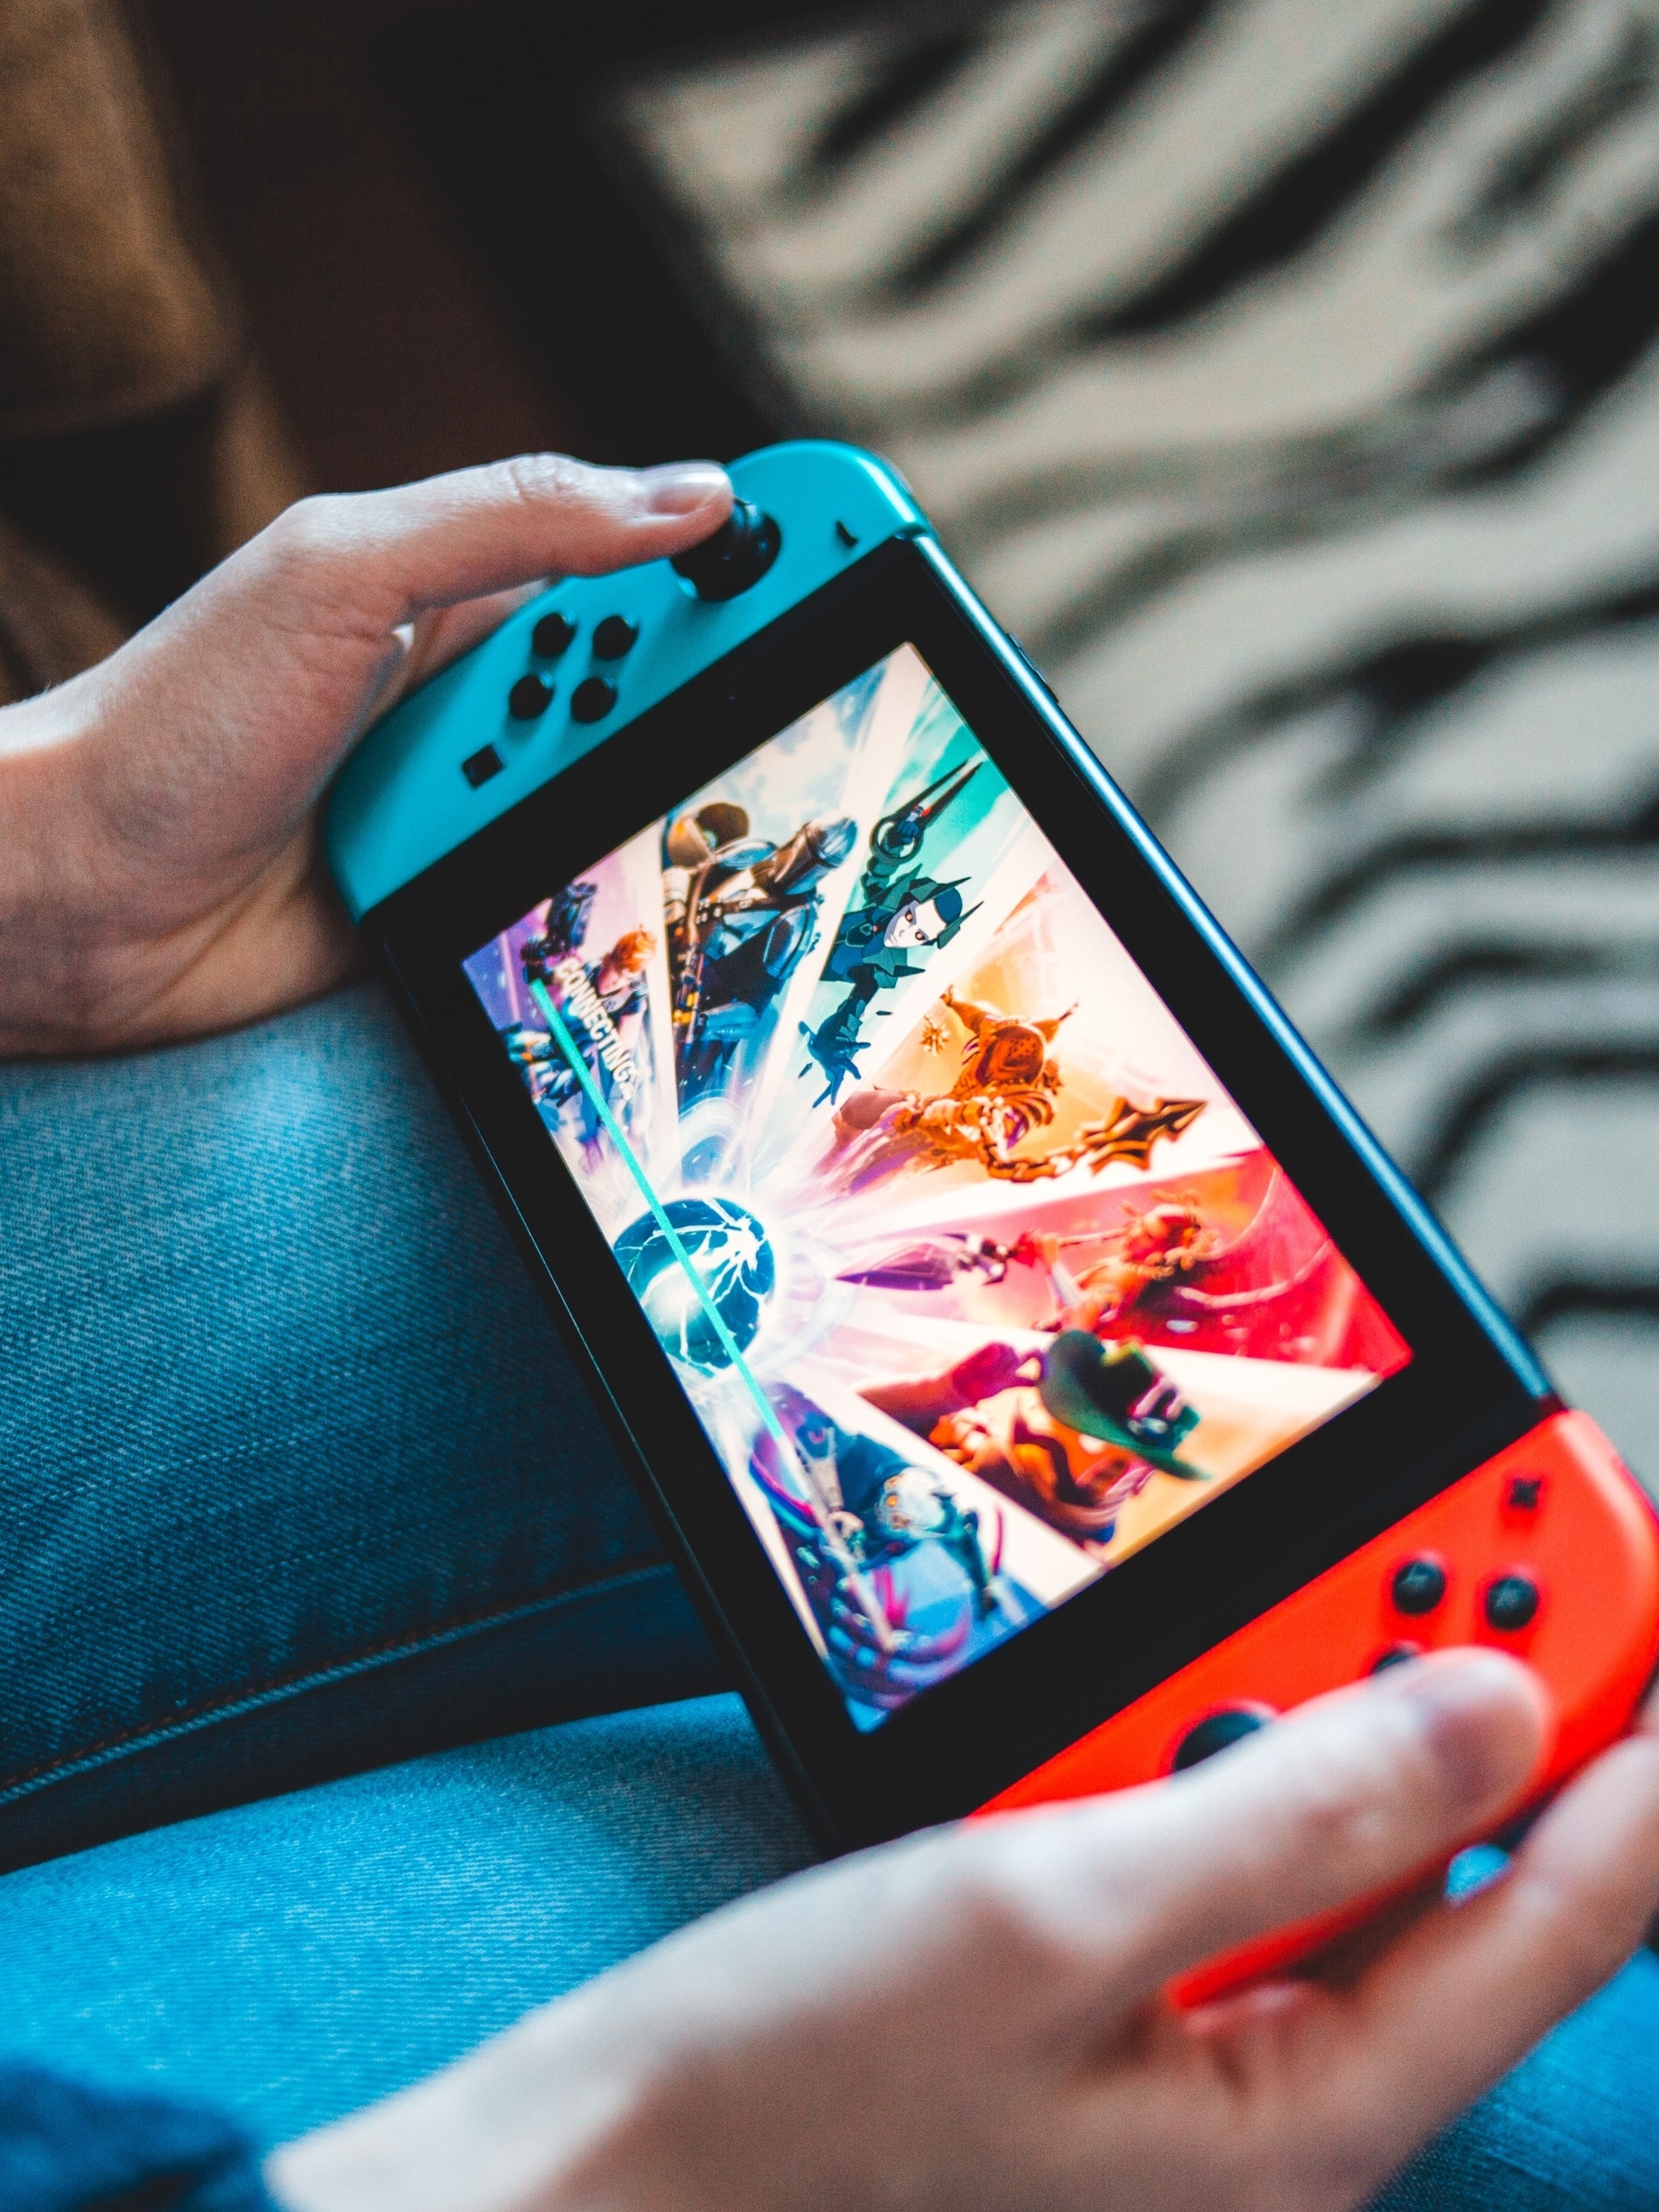 Nintendo Switch - Aqui ficam alguns dos títulos para a Nintendo Switch  disponíveis em 2021 e 2022. Já escolheram os que vão jogar?